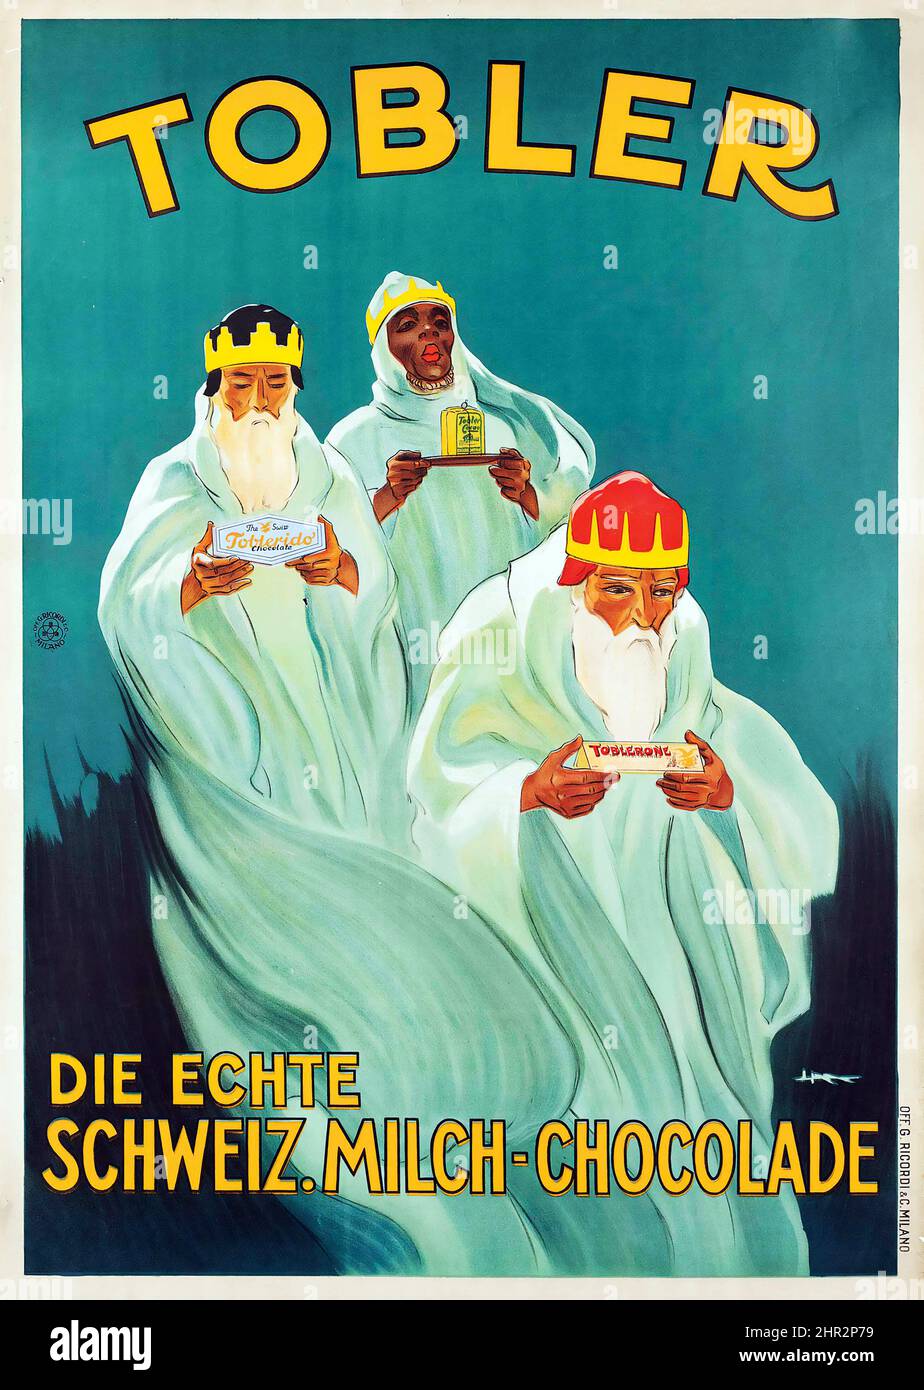 TOBLER - Lithographie in Farben, um 1925, gedruckt von G.Ricordi & C., Mailand, Vintage Werbeplakat. Werbung für Schweizer Milchschokolade. Drei Weise. Stockfoto